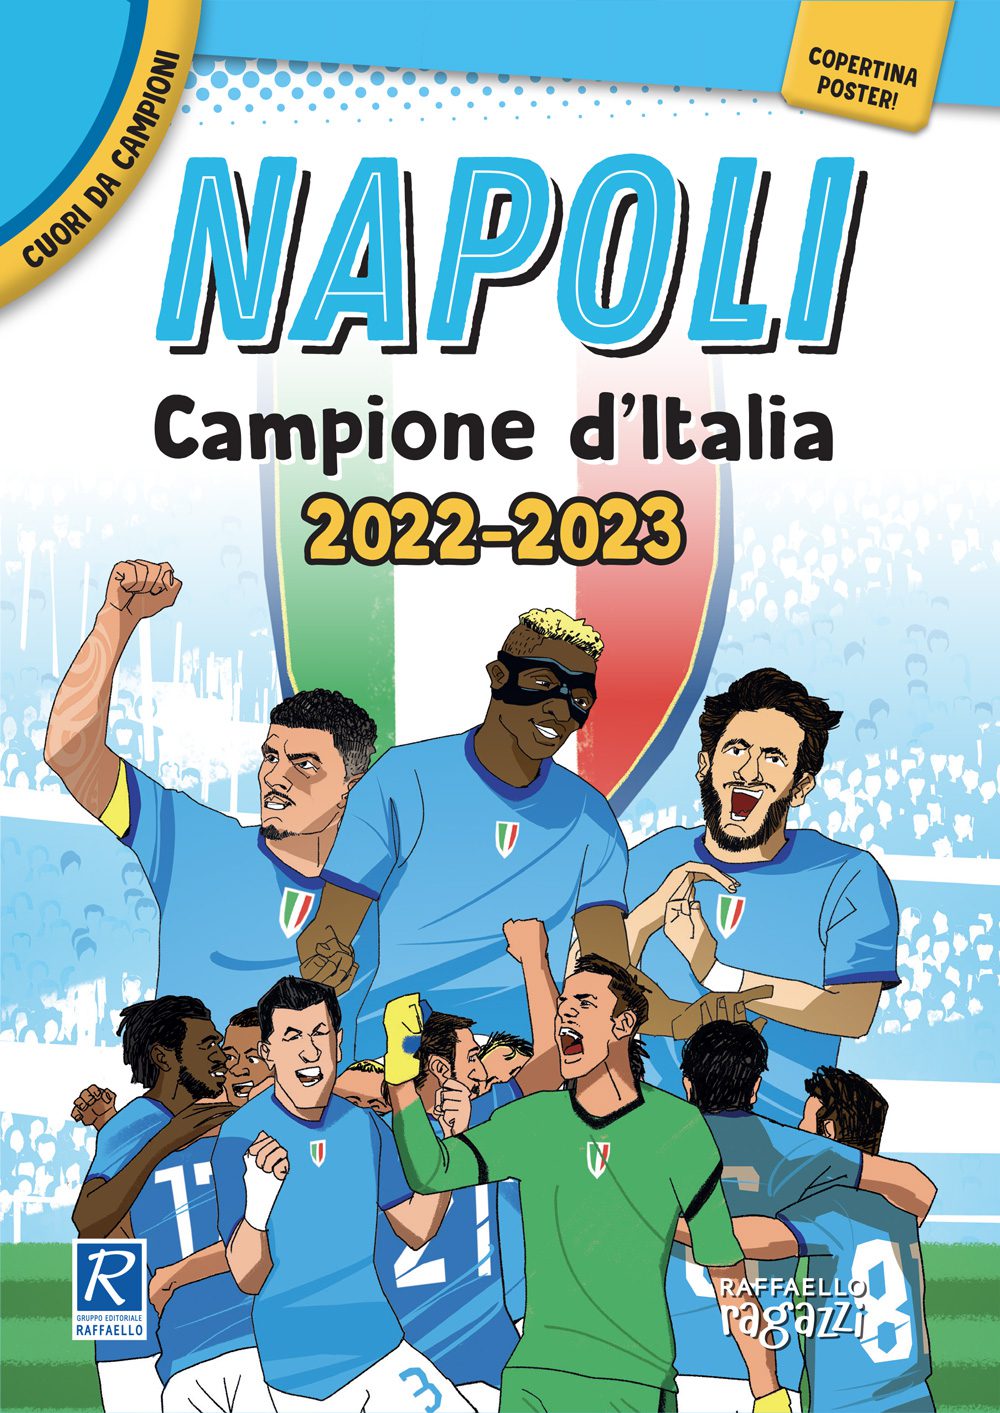 Napoli - Campione d'Italia 2022-2023